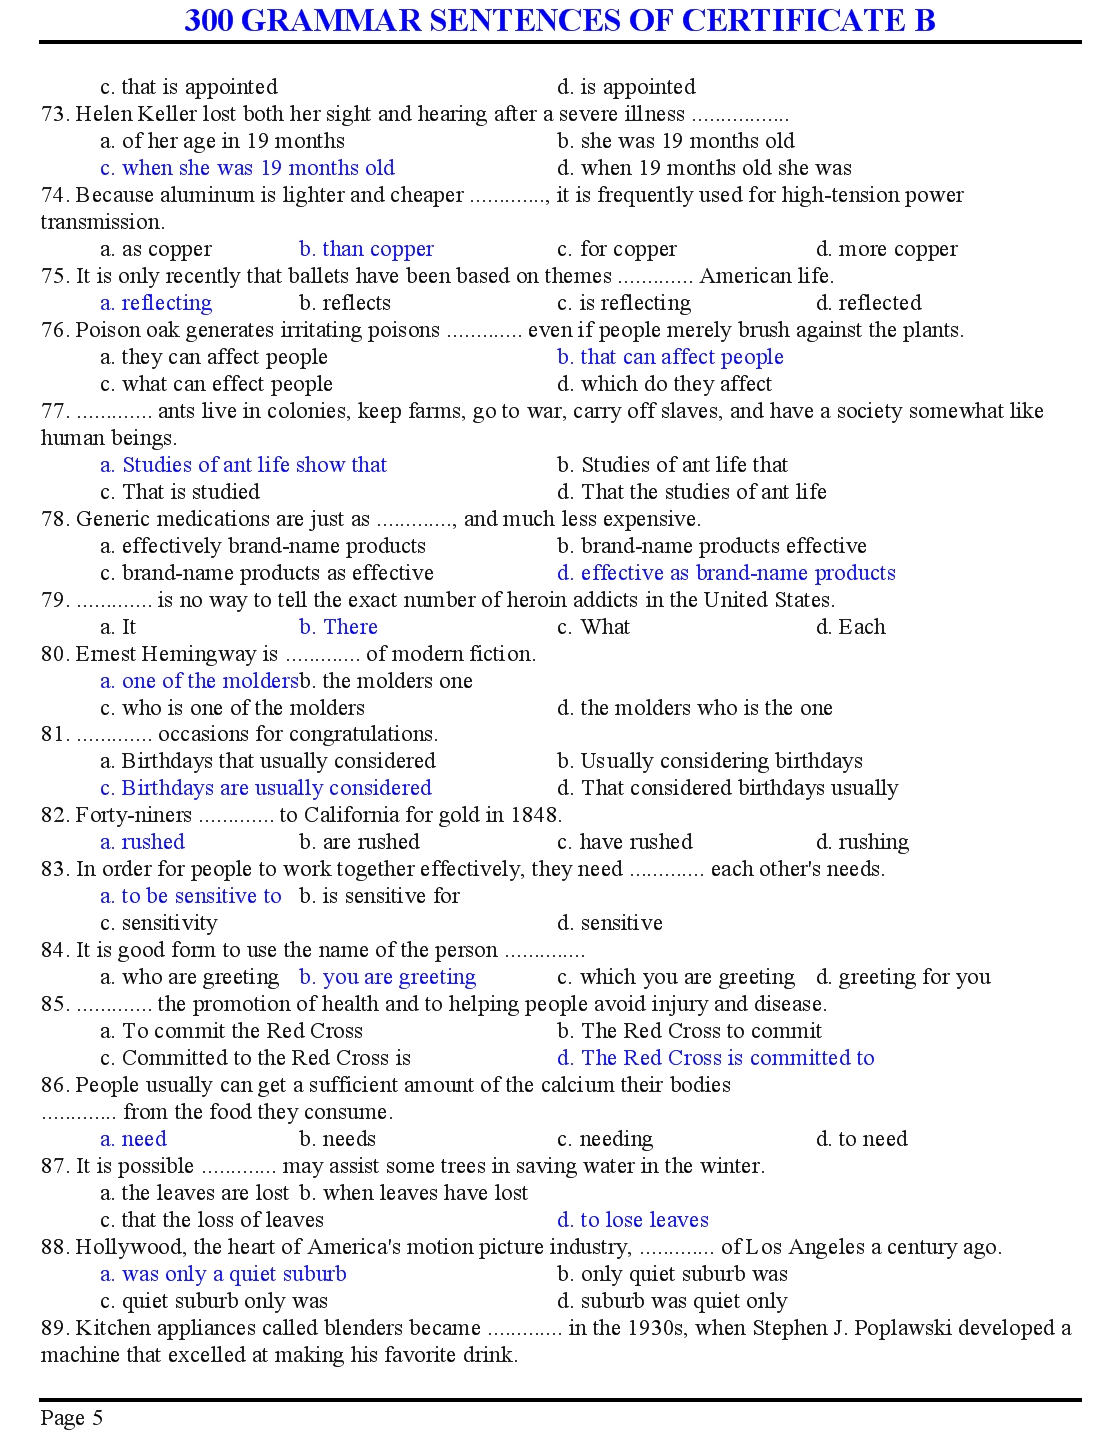 300 grammar sentences of certificate b trang 5